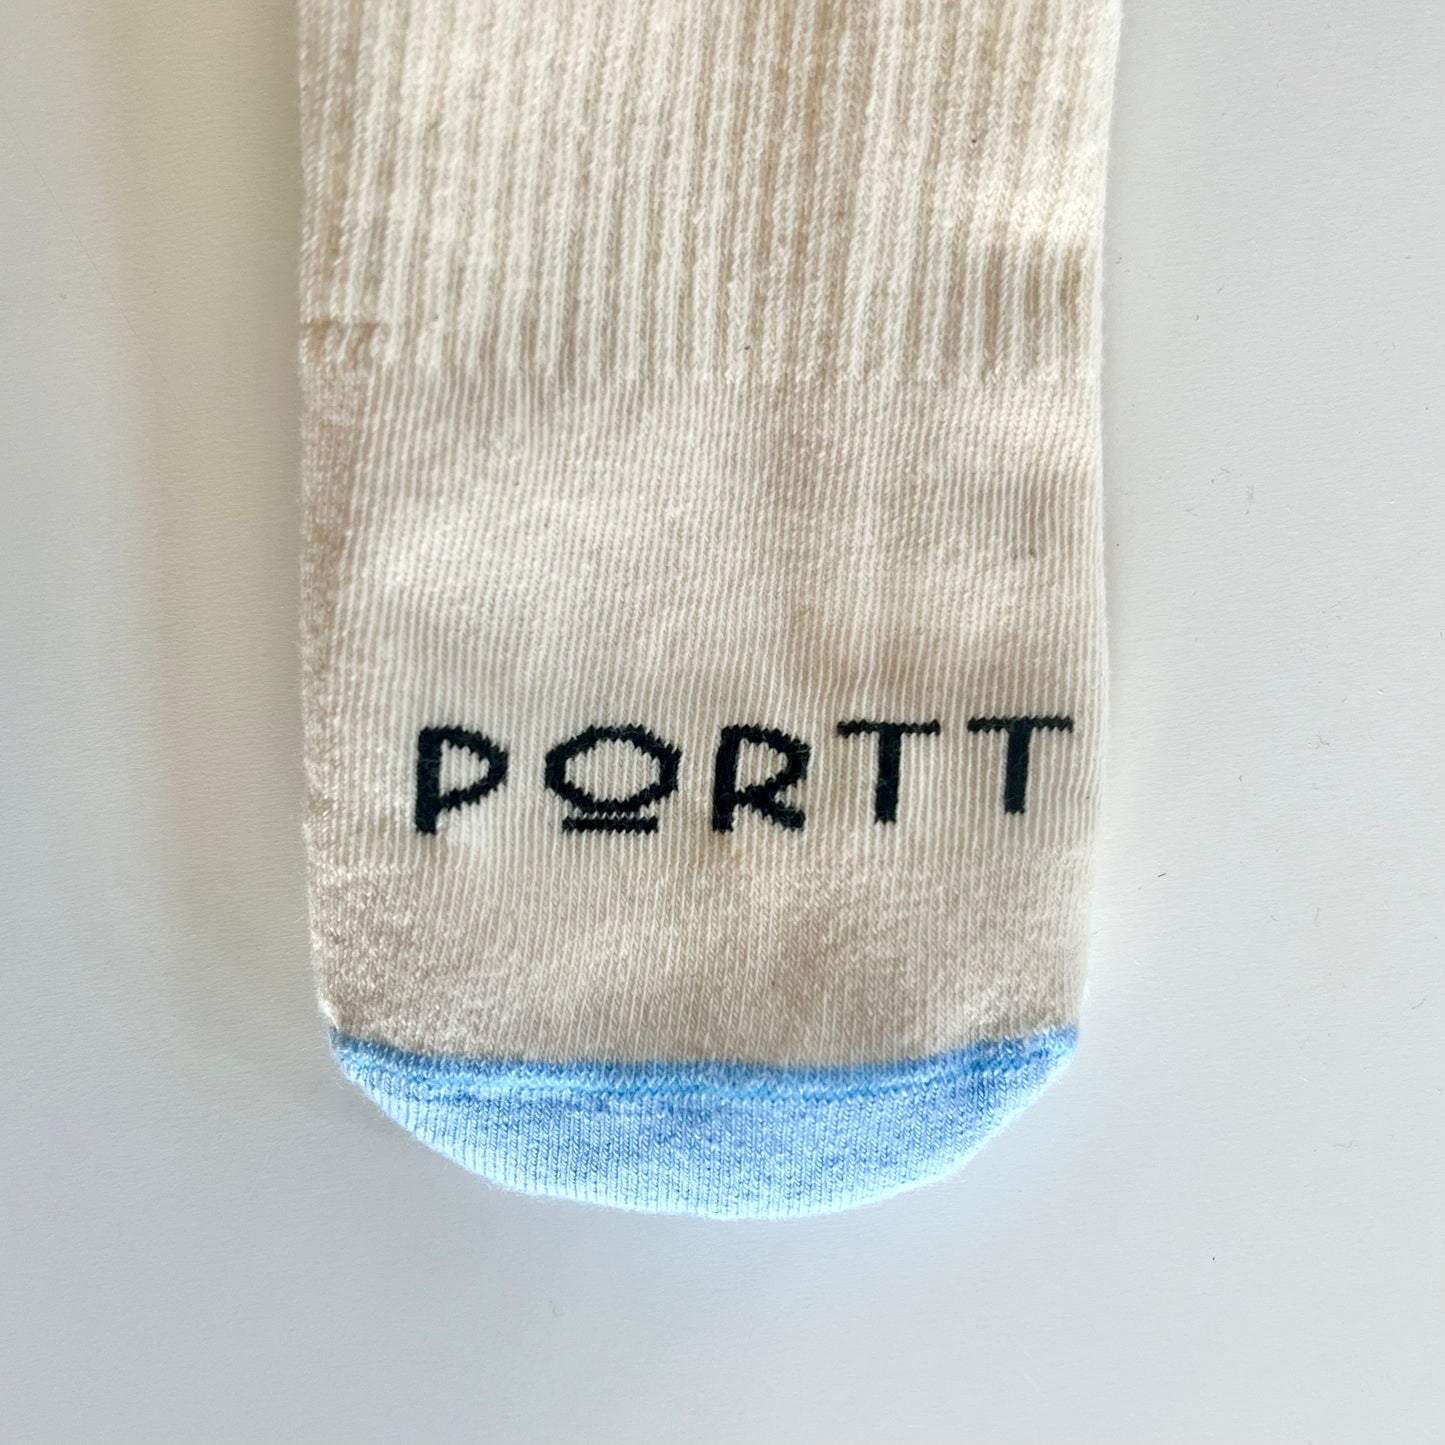 Portt Cotton Socks